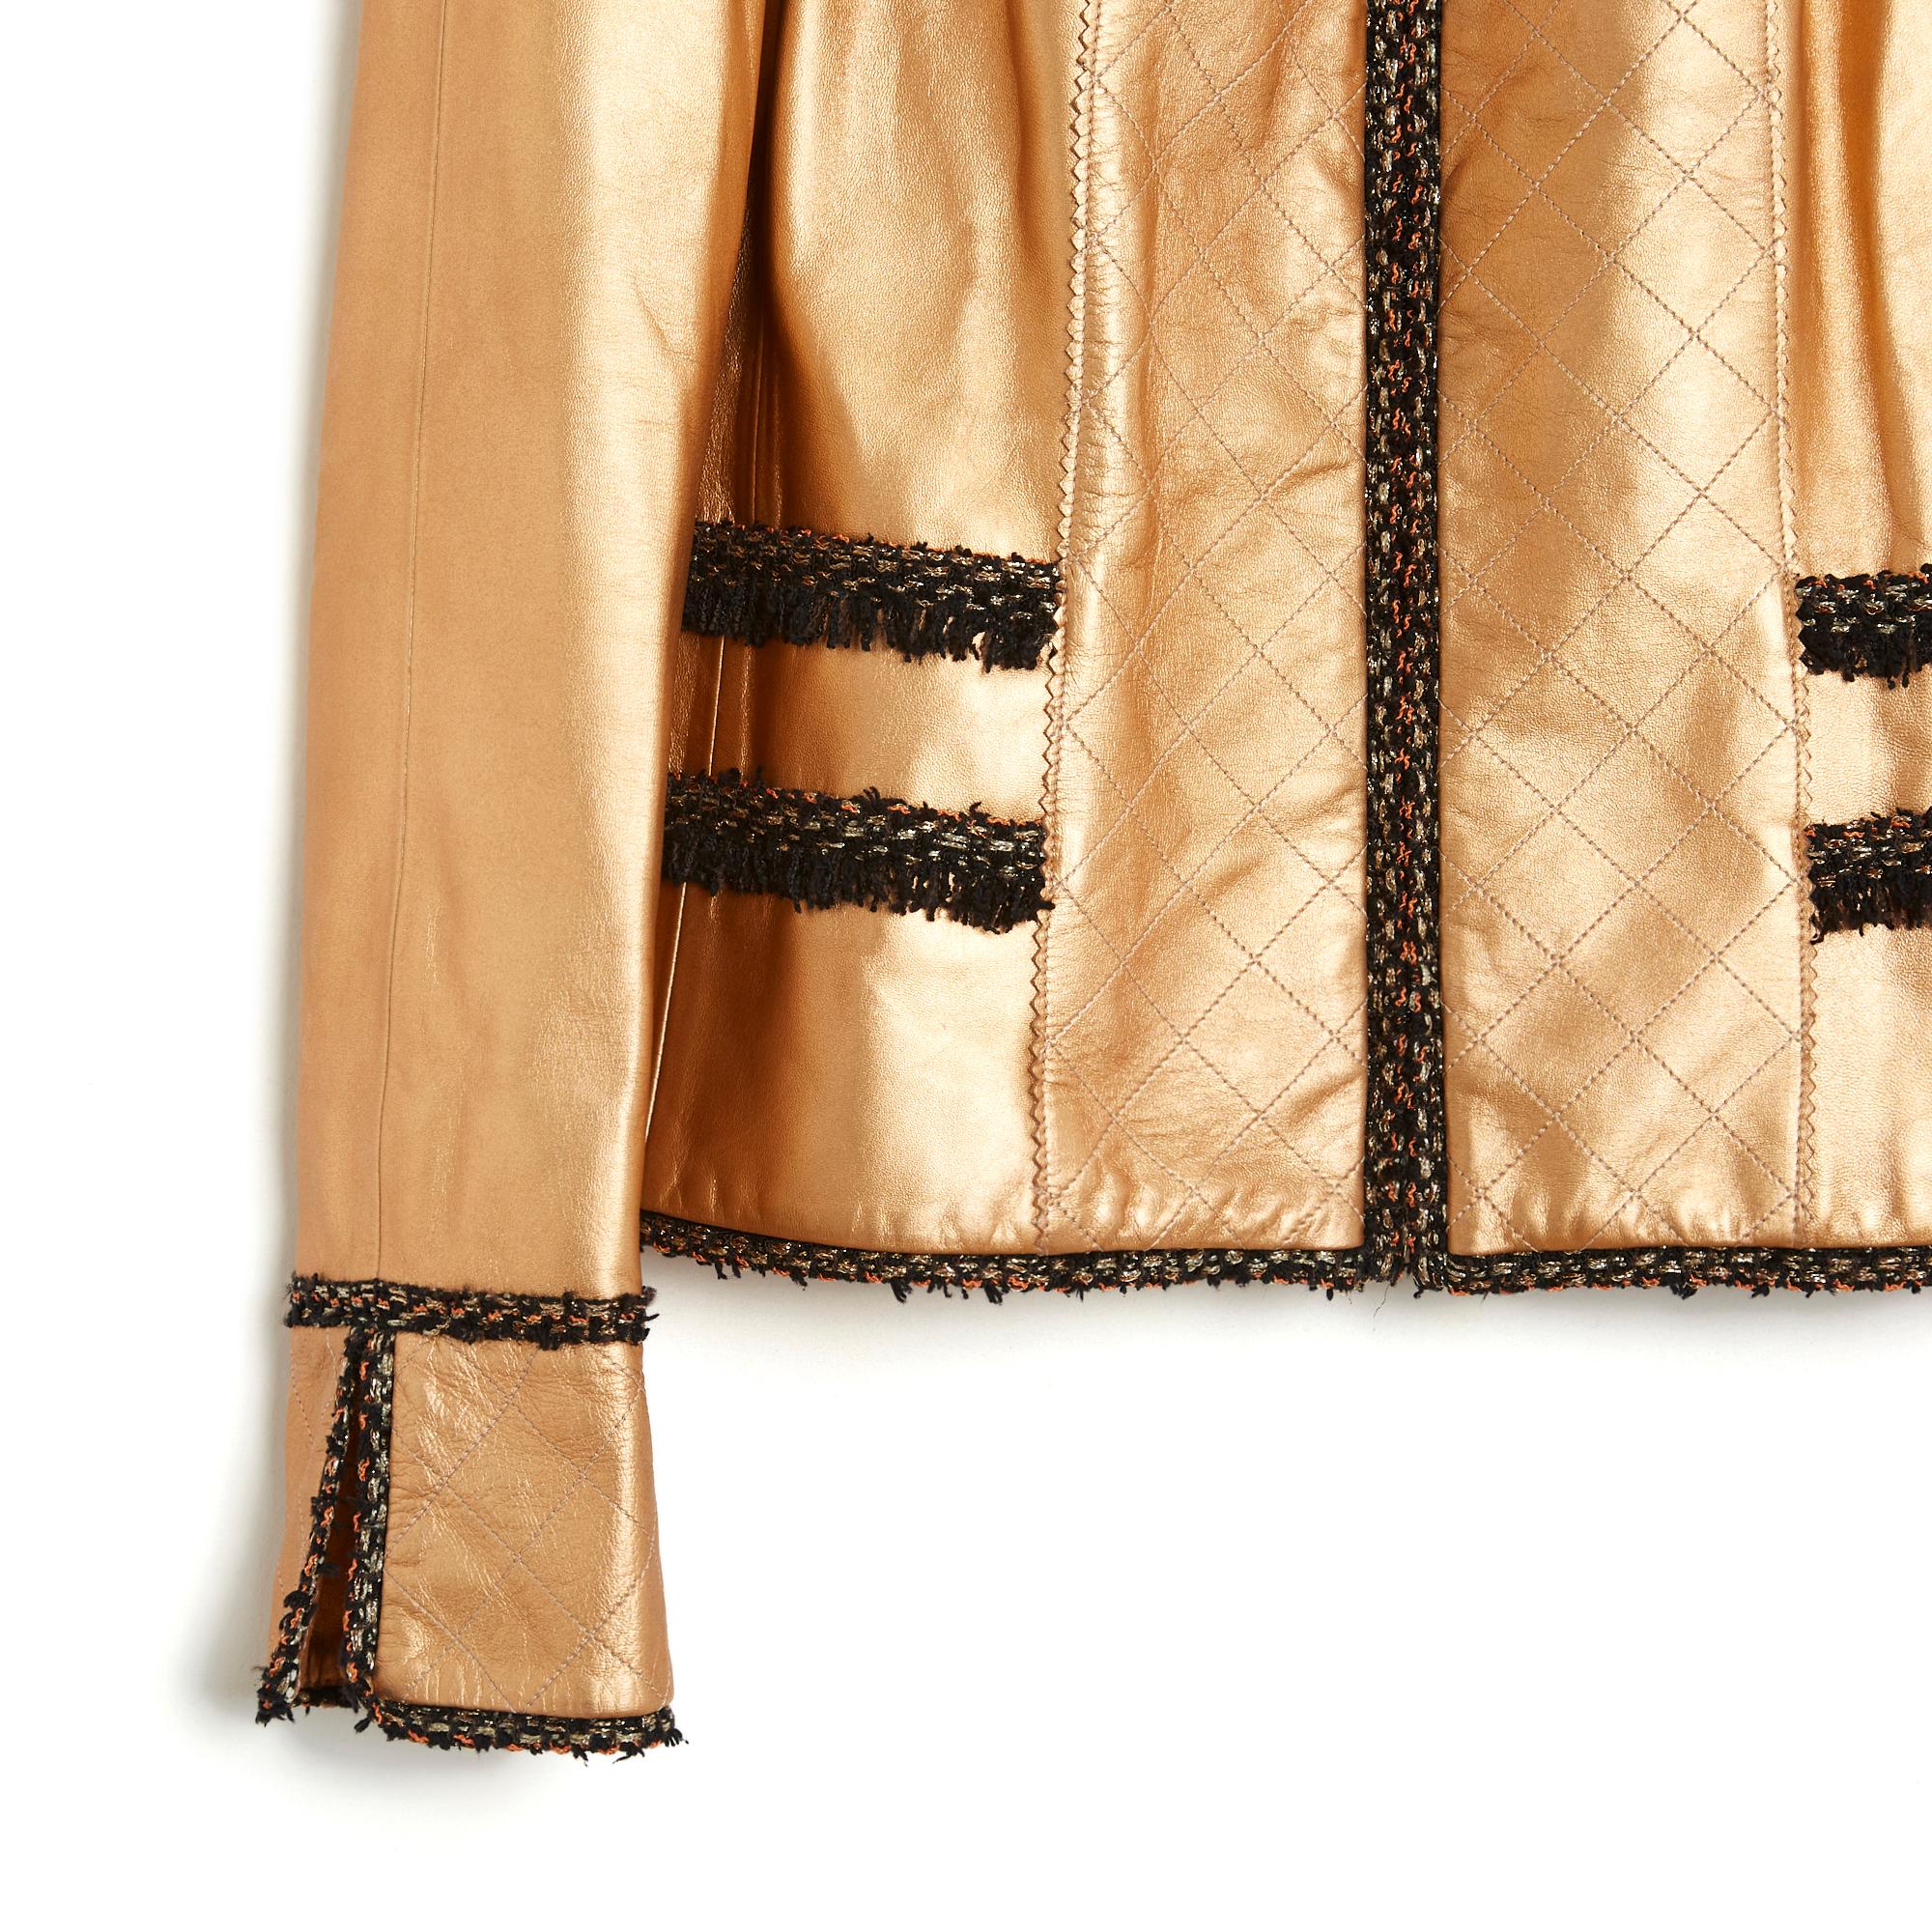 Chanel FW2005 Kollektion Jacke aus goldenem Leder und schwarzem und farbigem Tweed, gepolsterter Kragen und Latz, geschlossen mit einem Reißverschluss, 4 aufgesetzte Taschen (immer geschlossen), lange Raglanärmel unten offen, passendes